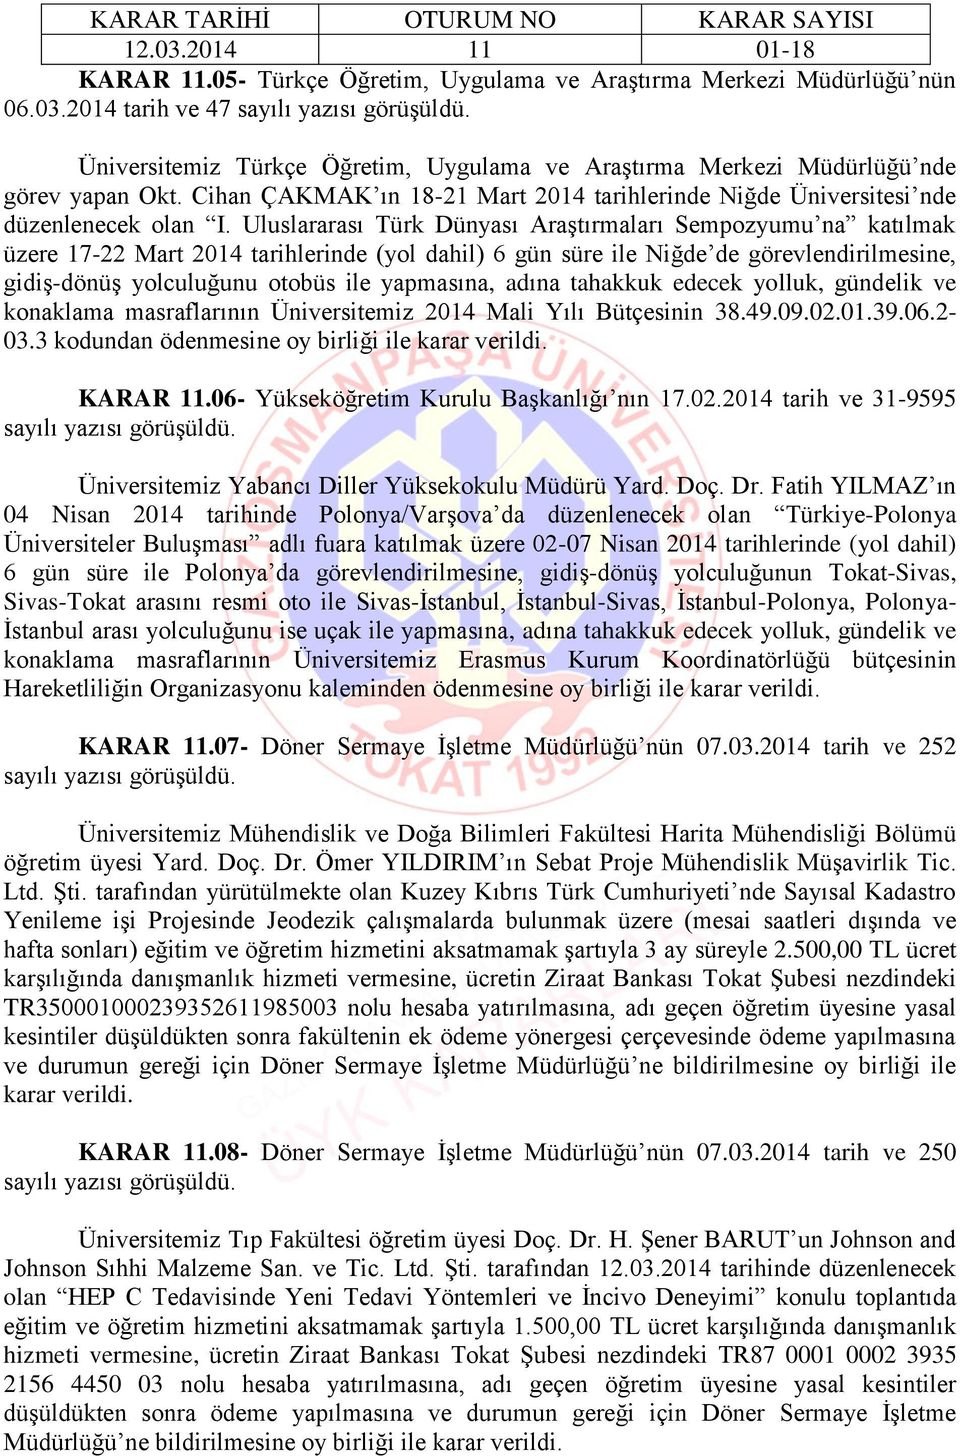 Uluslararası Türk Dünyası Araştırmaları Sempozyumu na katılmak üzere 17-22 Mart 2014 tarihlerinde (yol dahil) 6 gün süre ile Niğde de görevlendirilmesine, gidiş-dönüş yolculuğunu otobüs ile